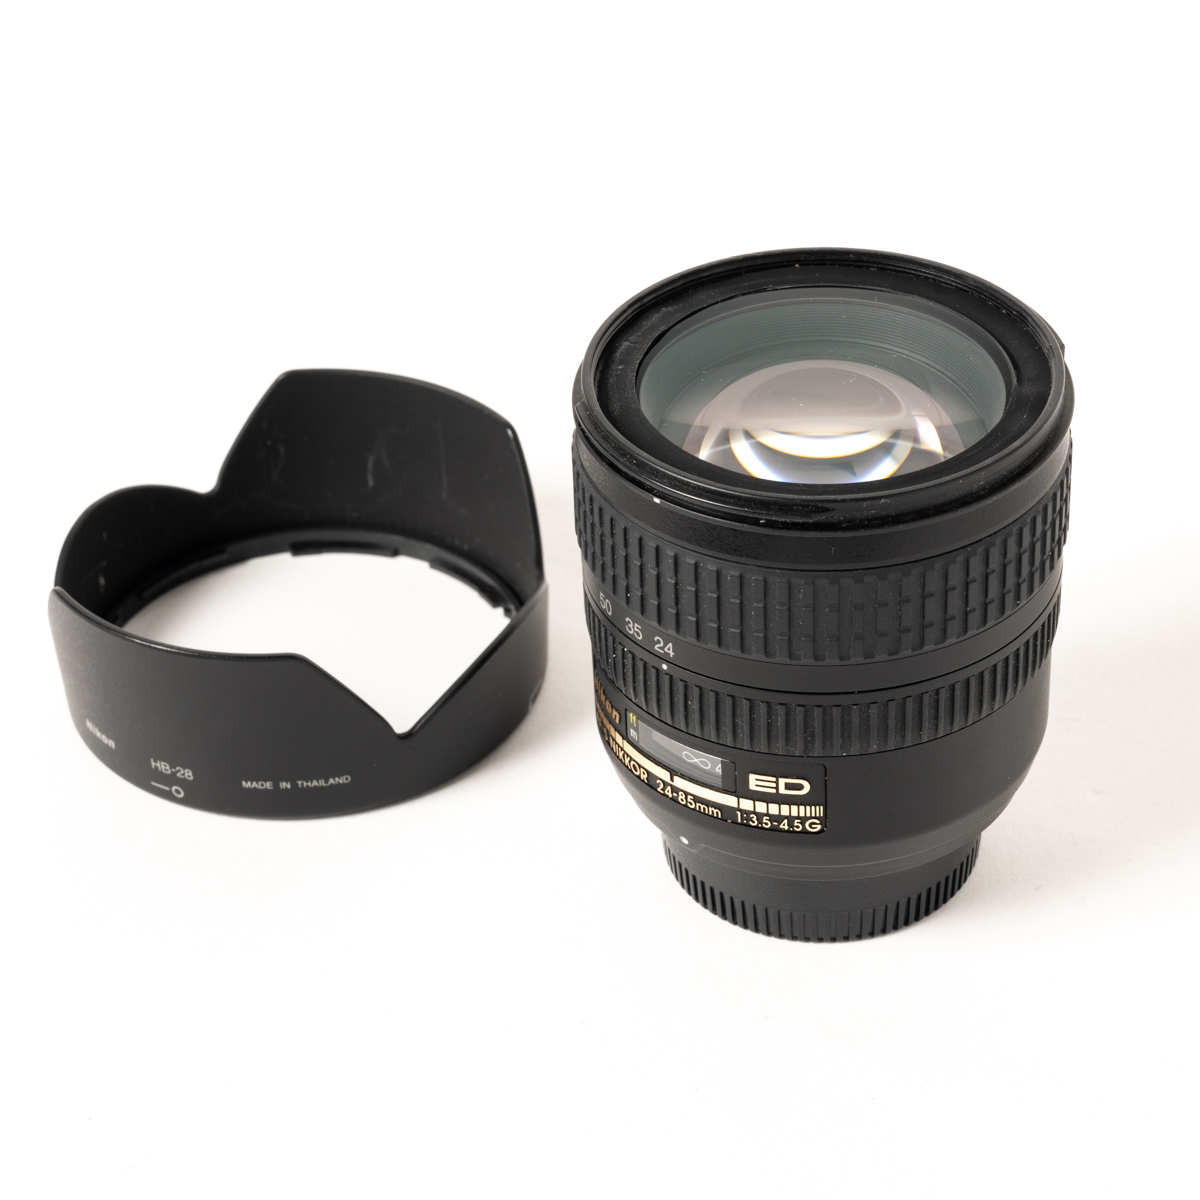 Nikon AF-S 24-85mm f3.5-4.5G ED lens